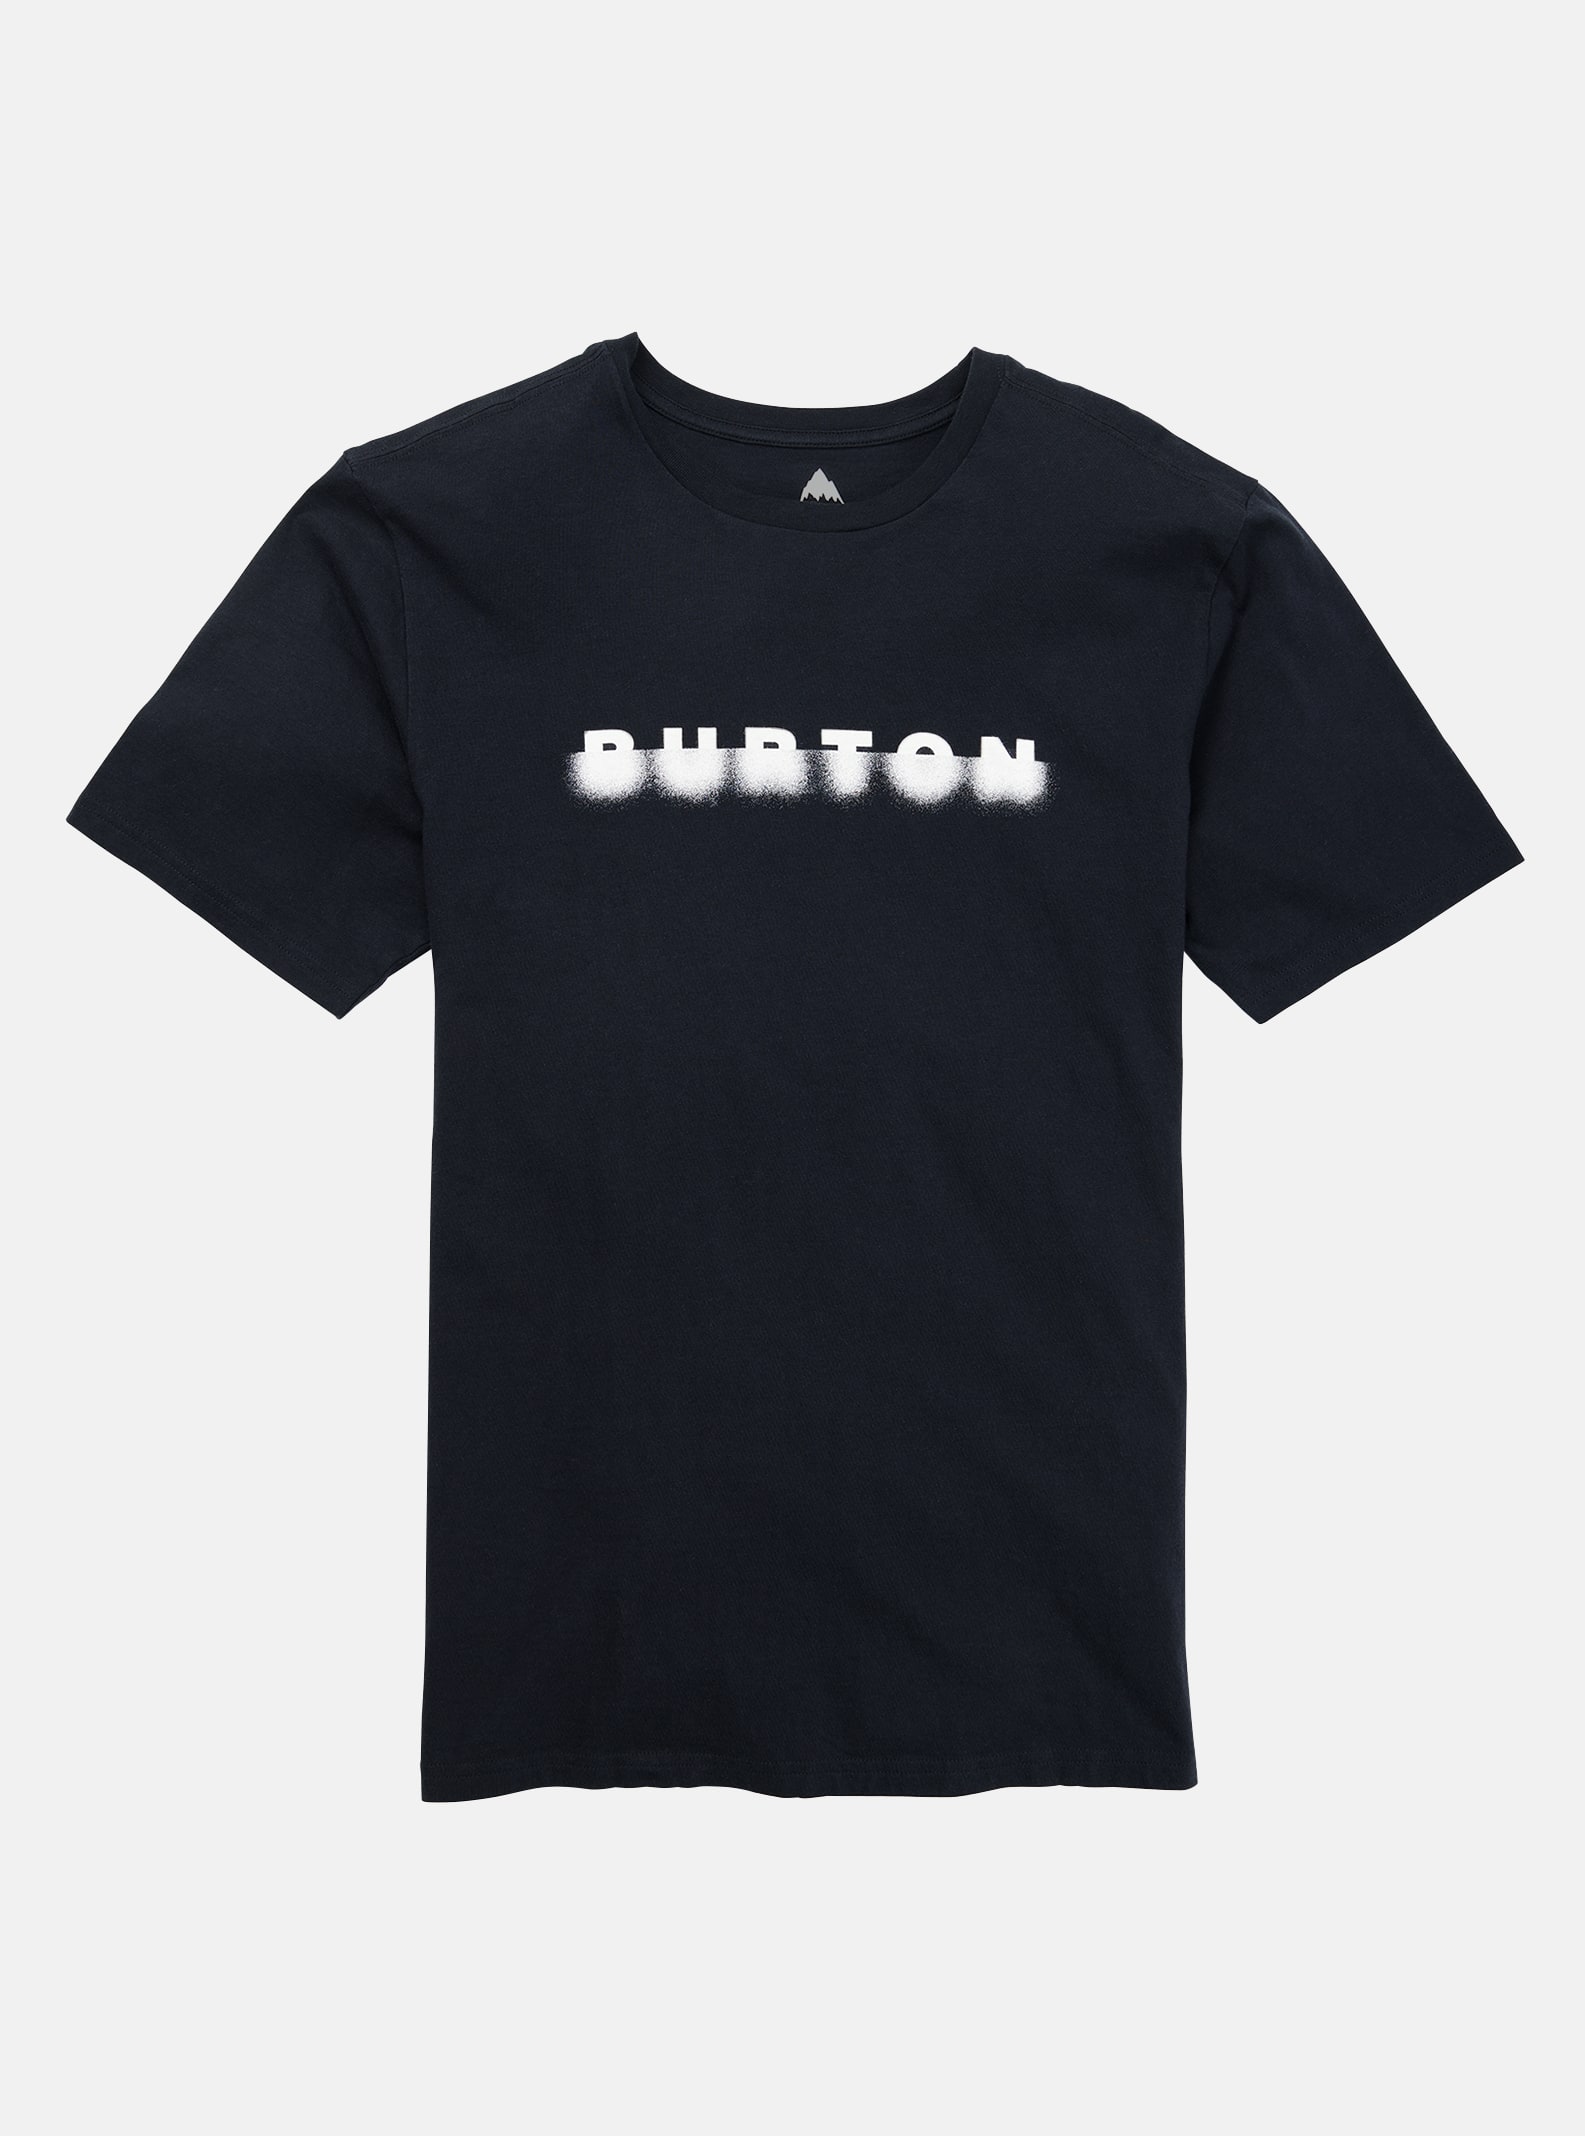 Burton T-shirt för herr - Cosmist, True Black, XS